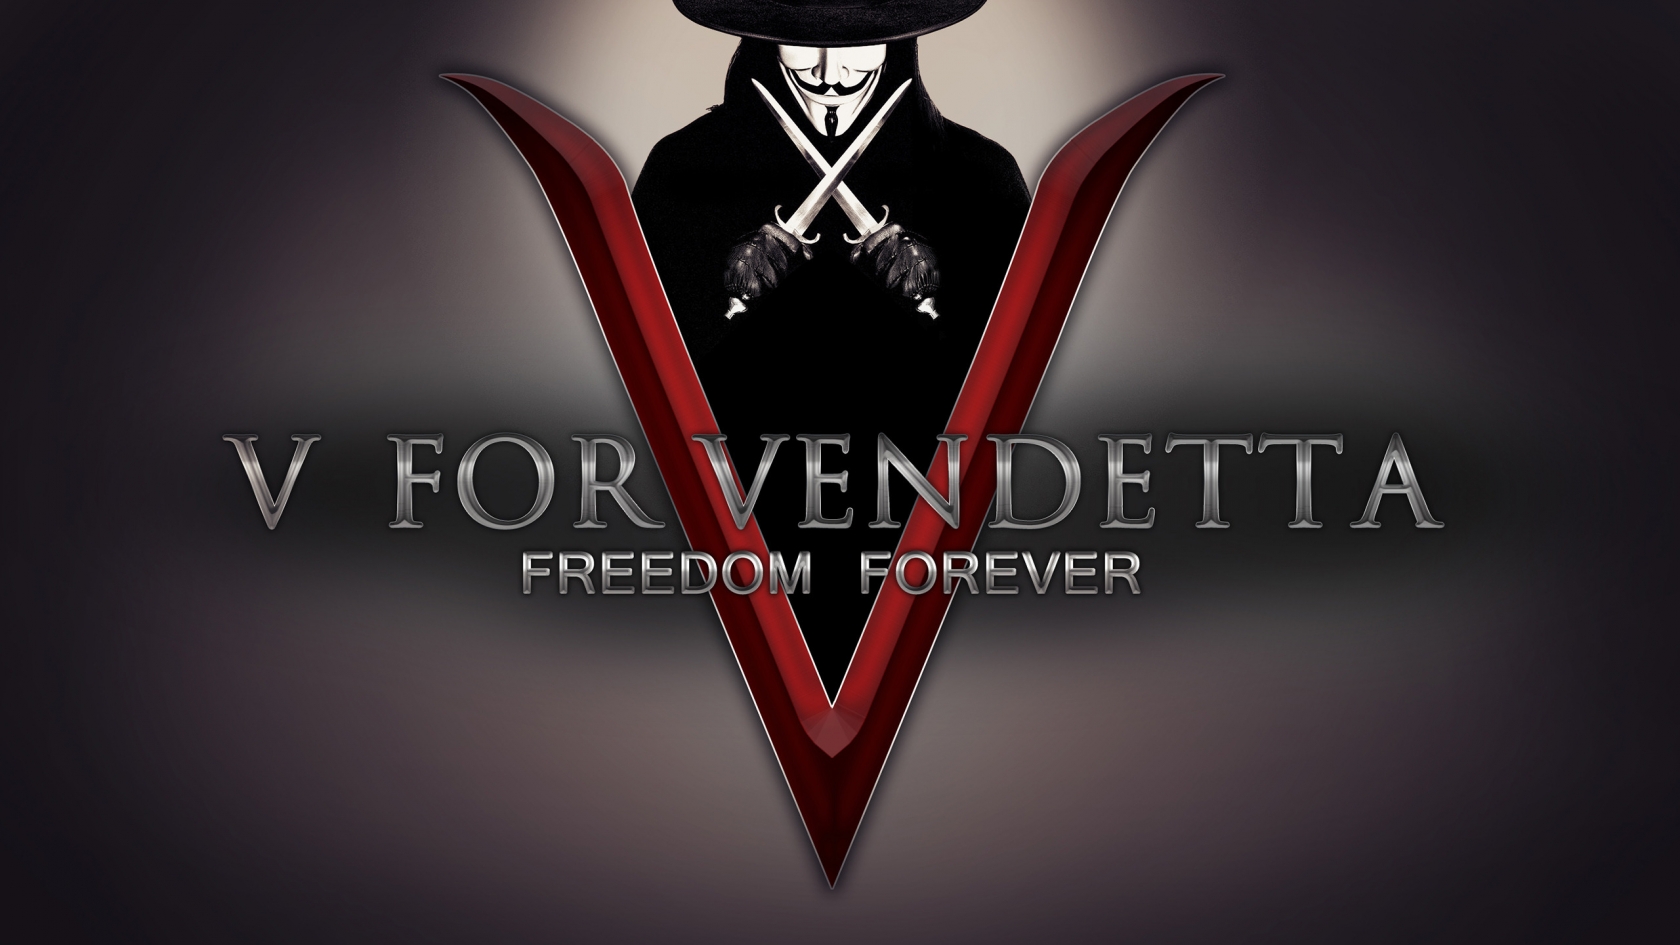 V for Vendetta Freedom Forever for 1680 x 945 HDTV resolution